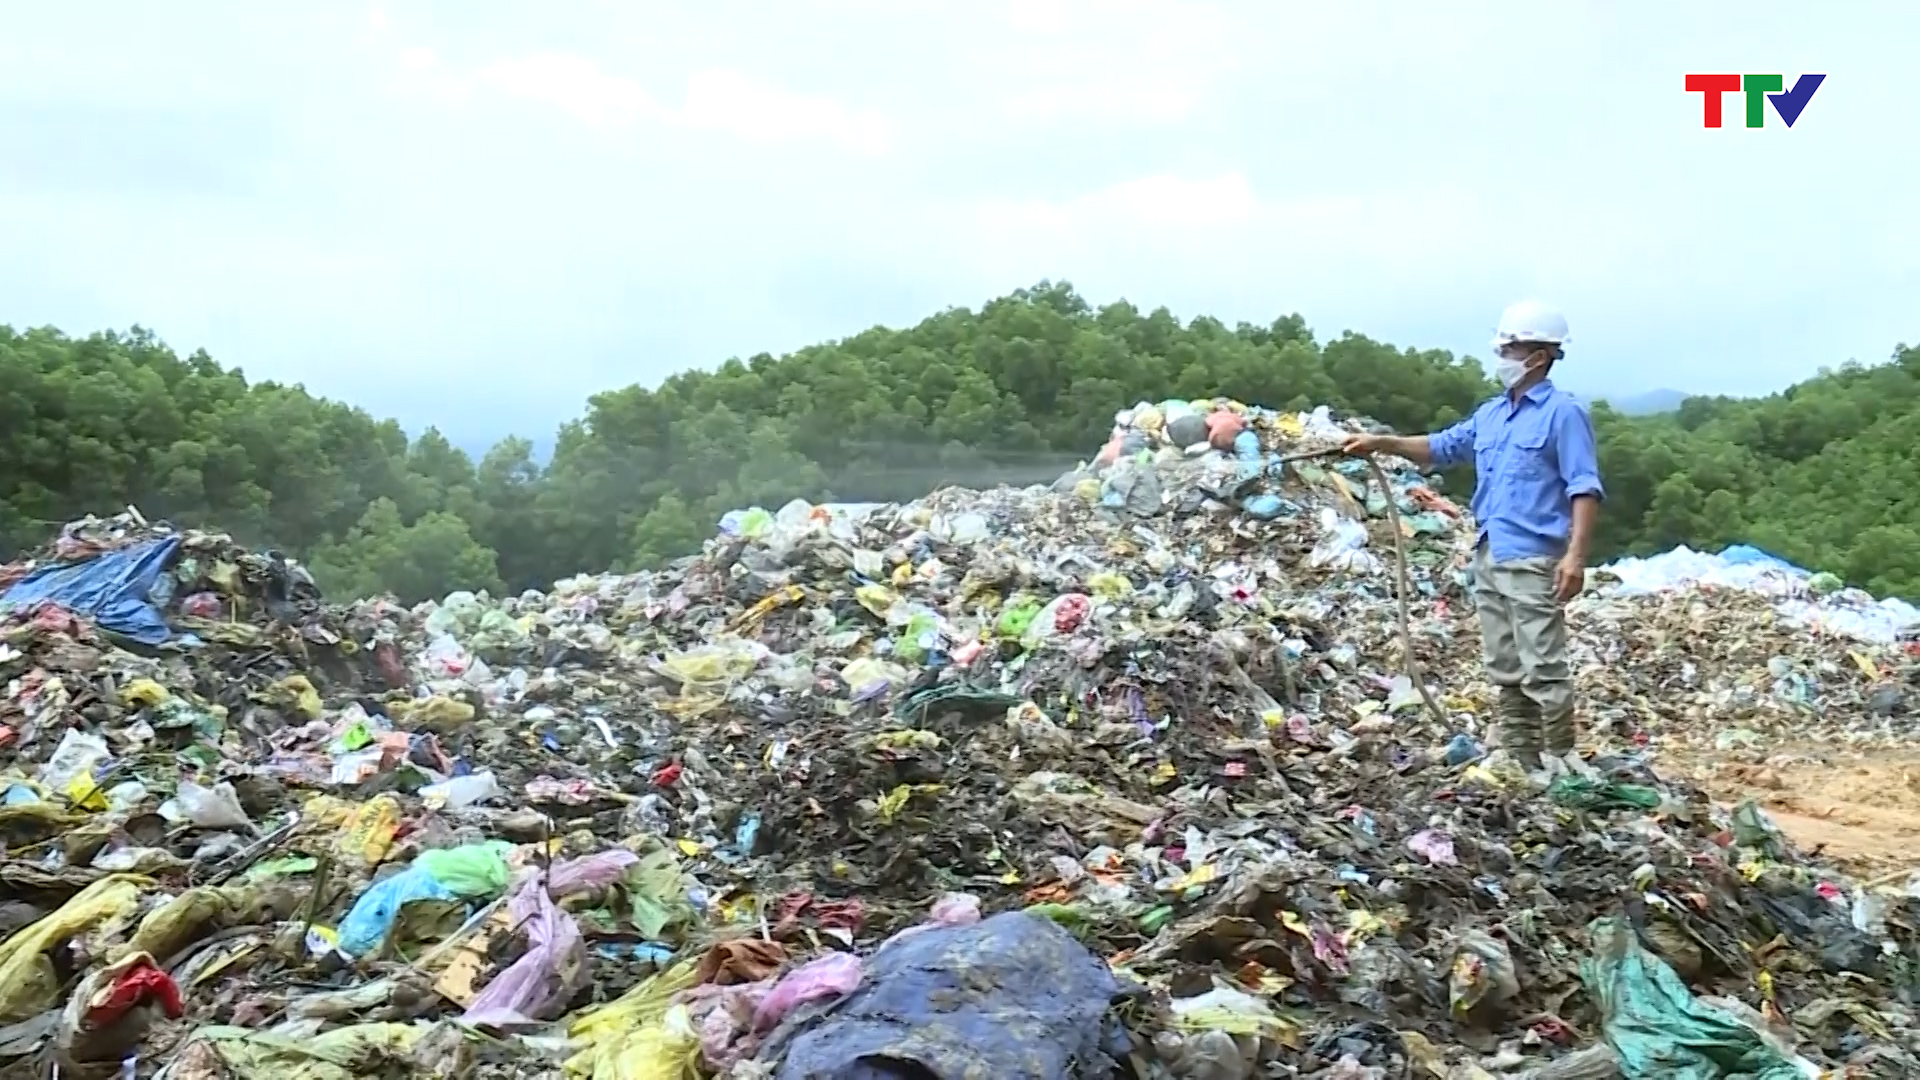 Đề xuất xử lý các bãi rác tồn đọng bằng chế phẩm sinh học - Ảnh 3.